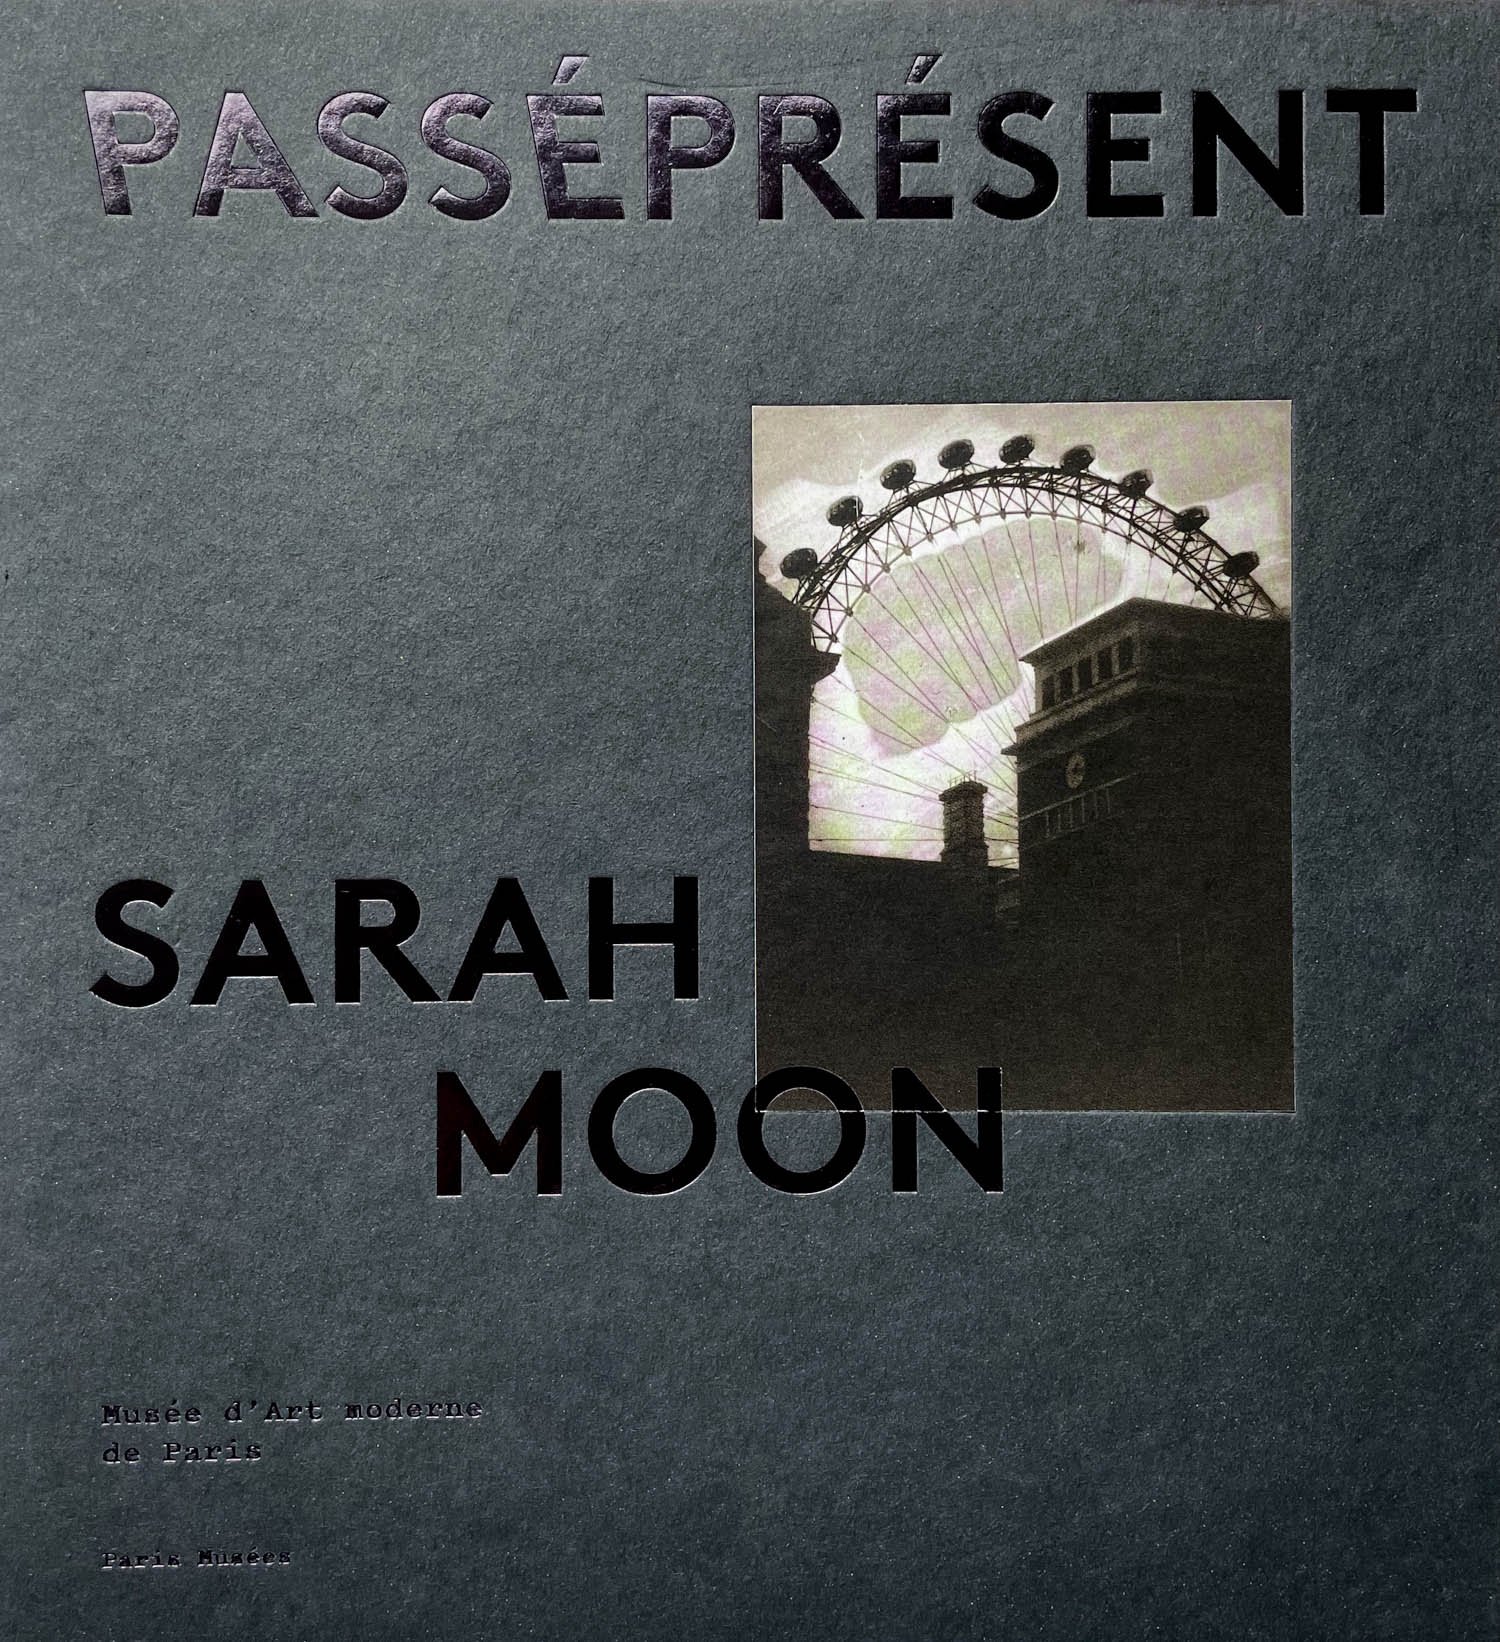 Sarah Moon PasséPrésent